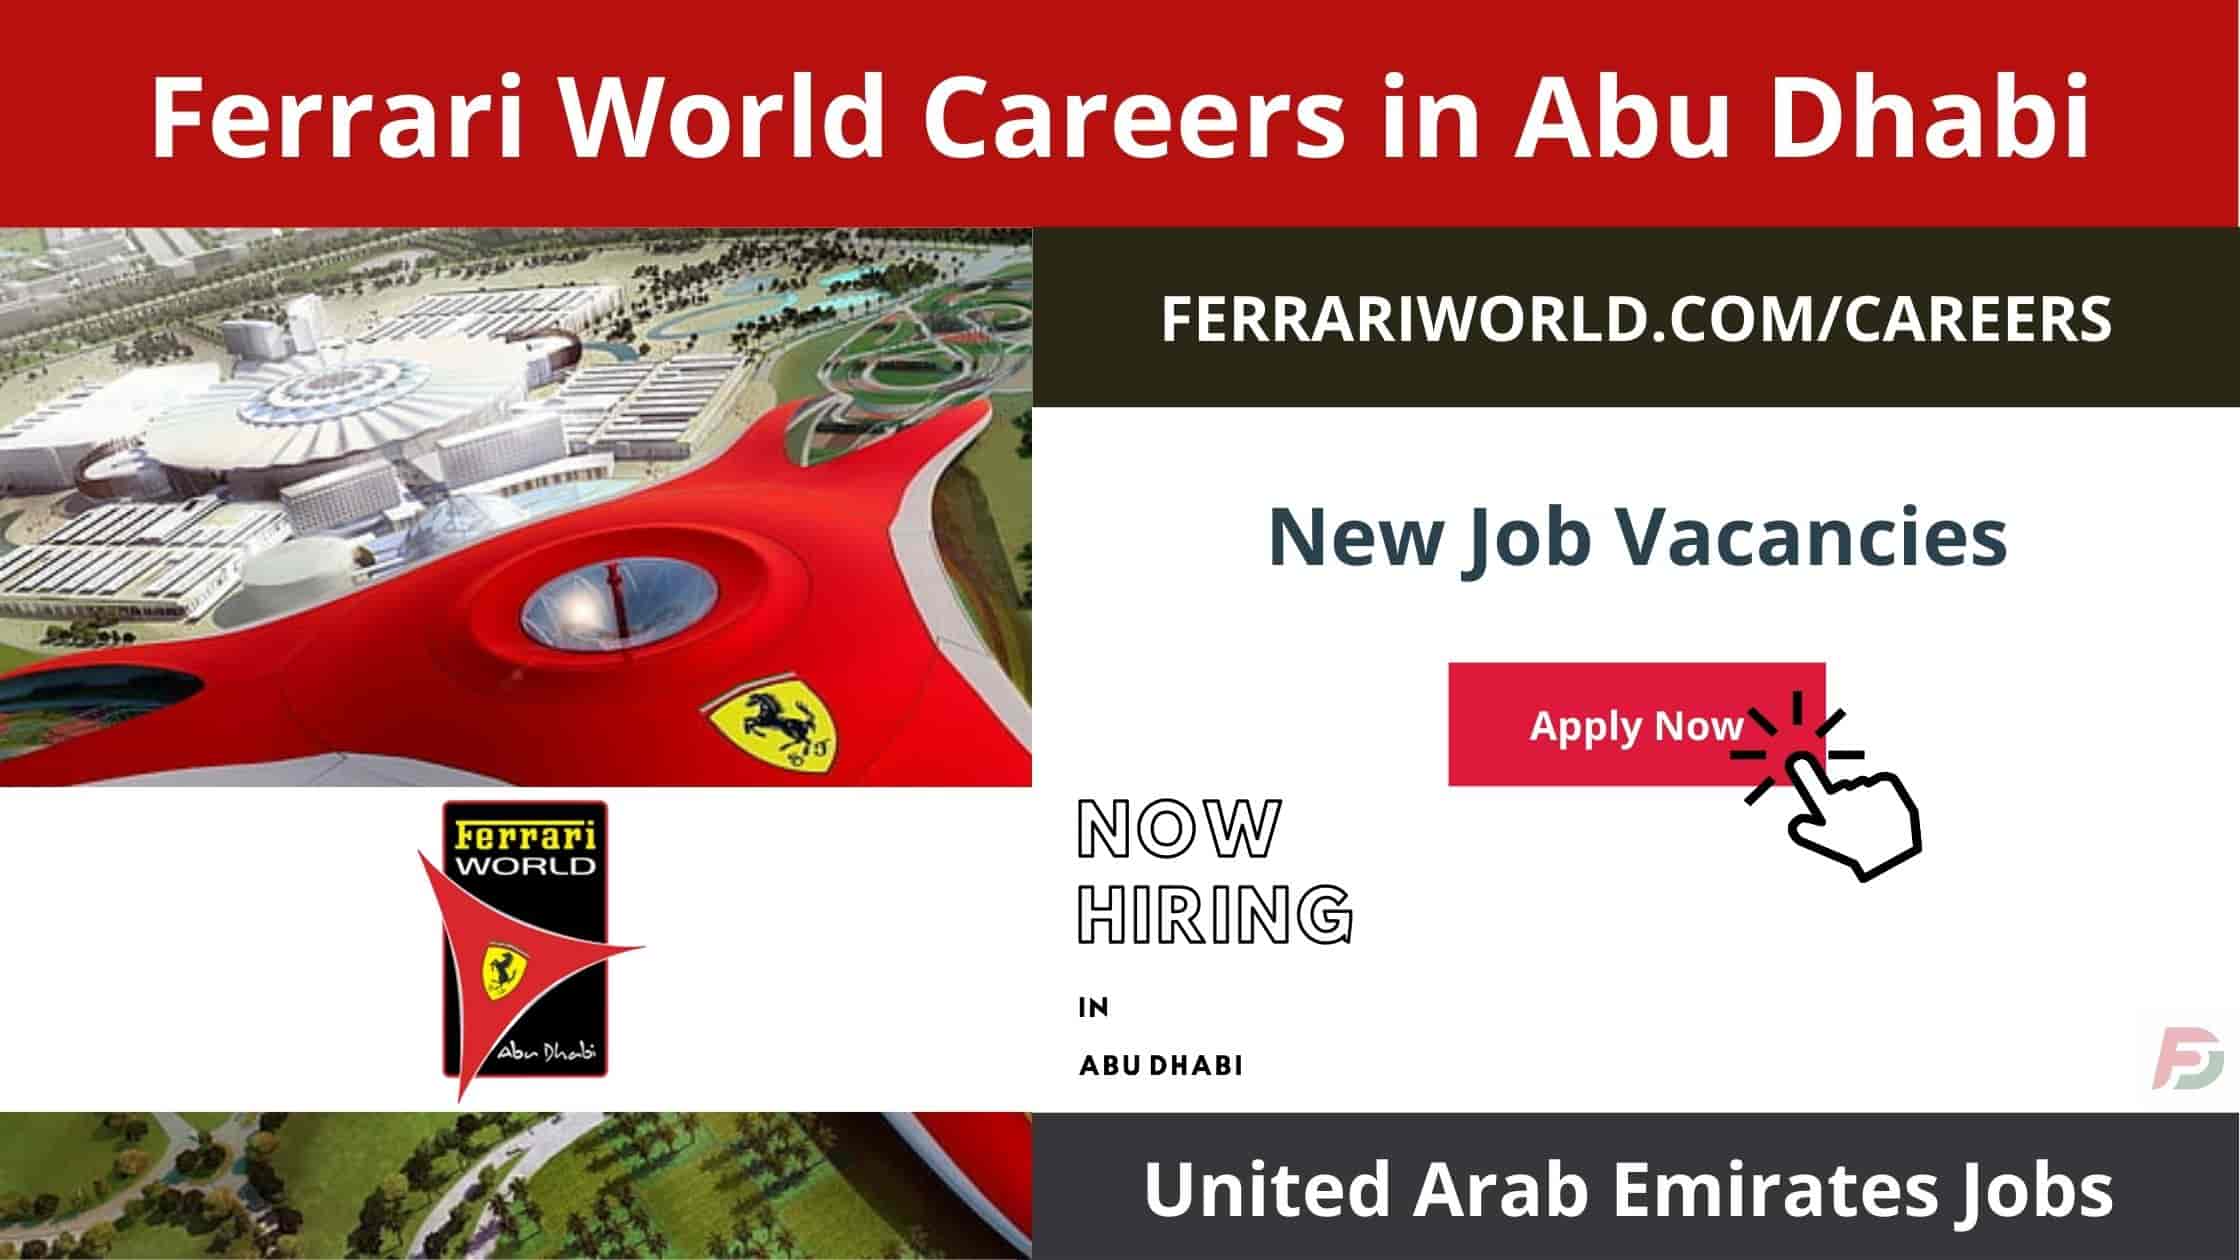 Ferrari World Careers in Abu Dhabi